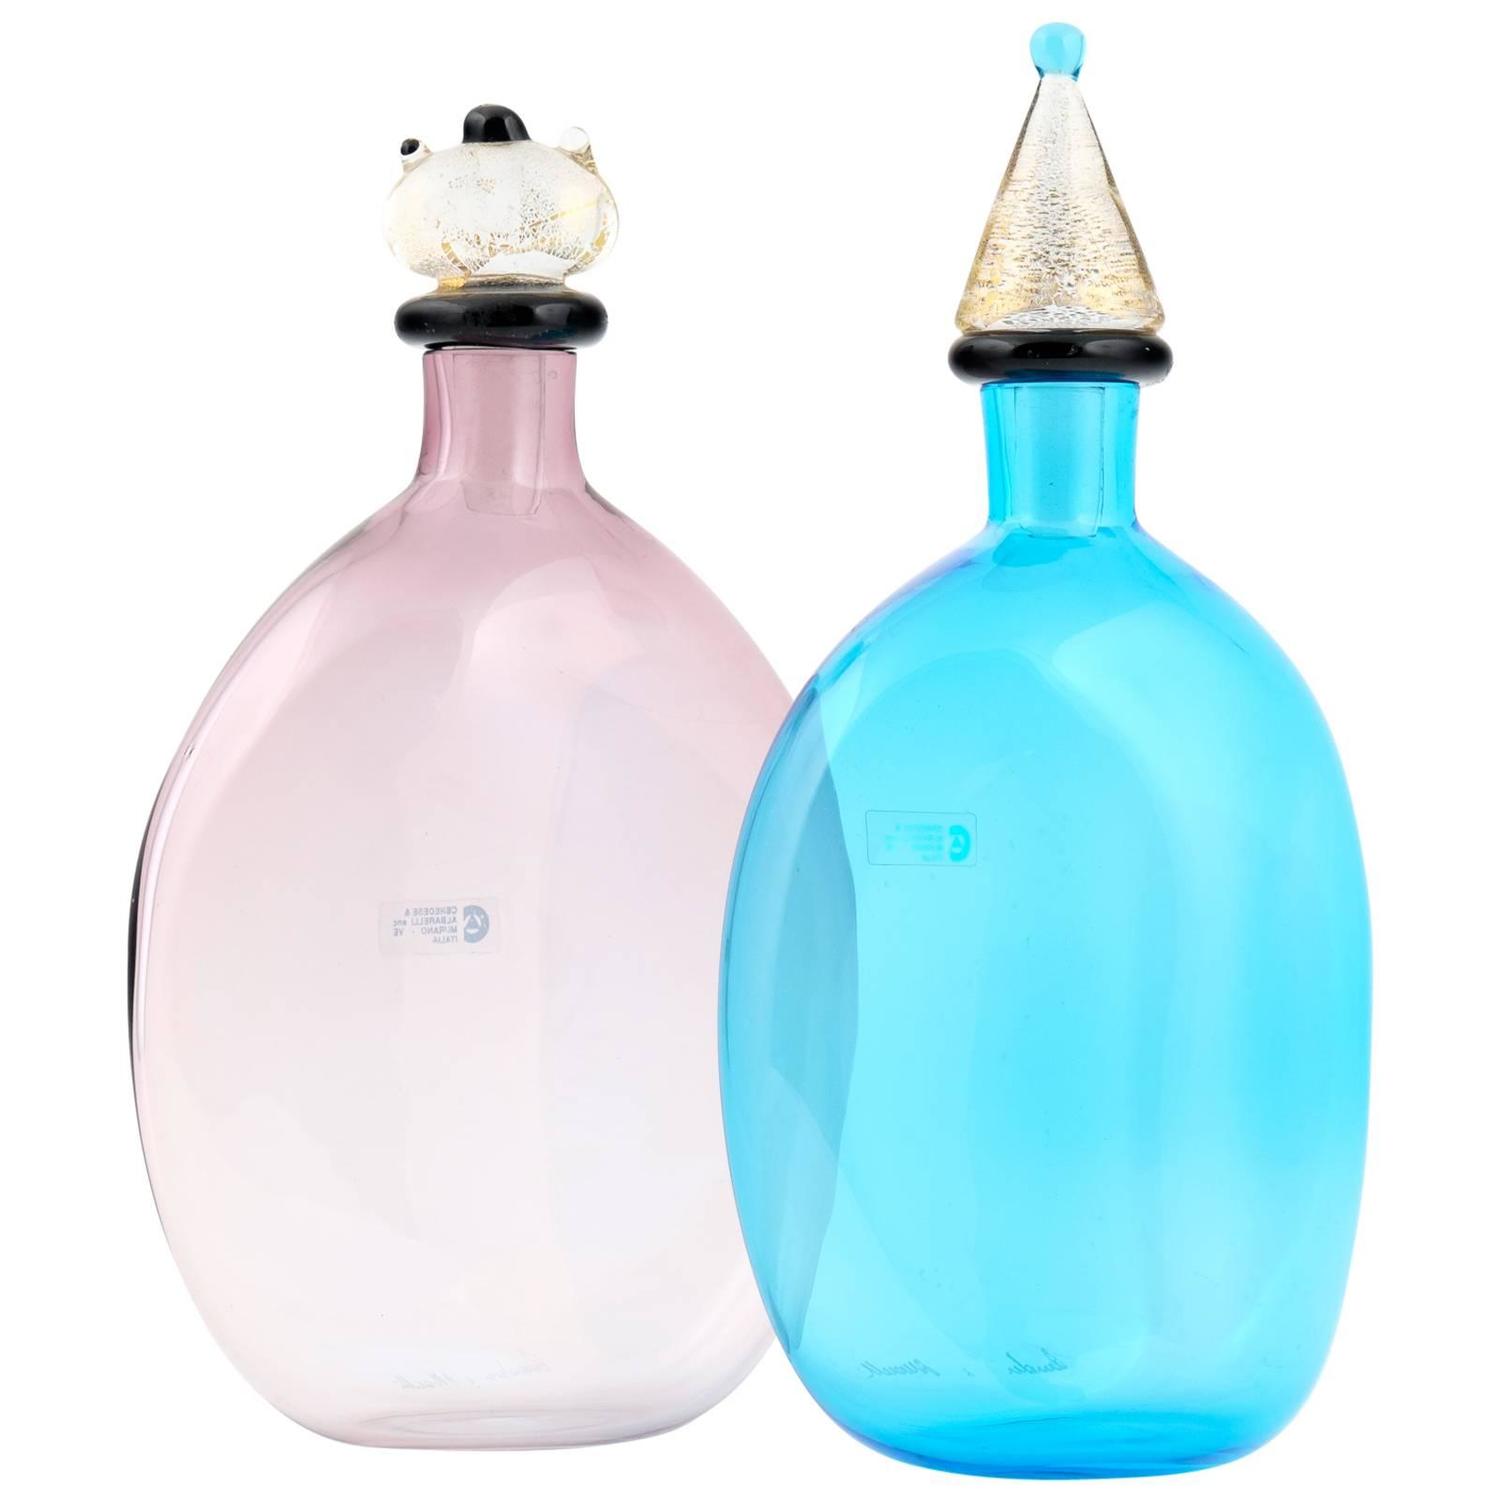 Cenedese & Albarelli Murano glass bottles, 1960s